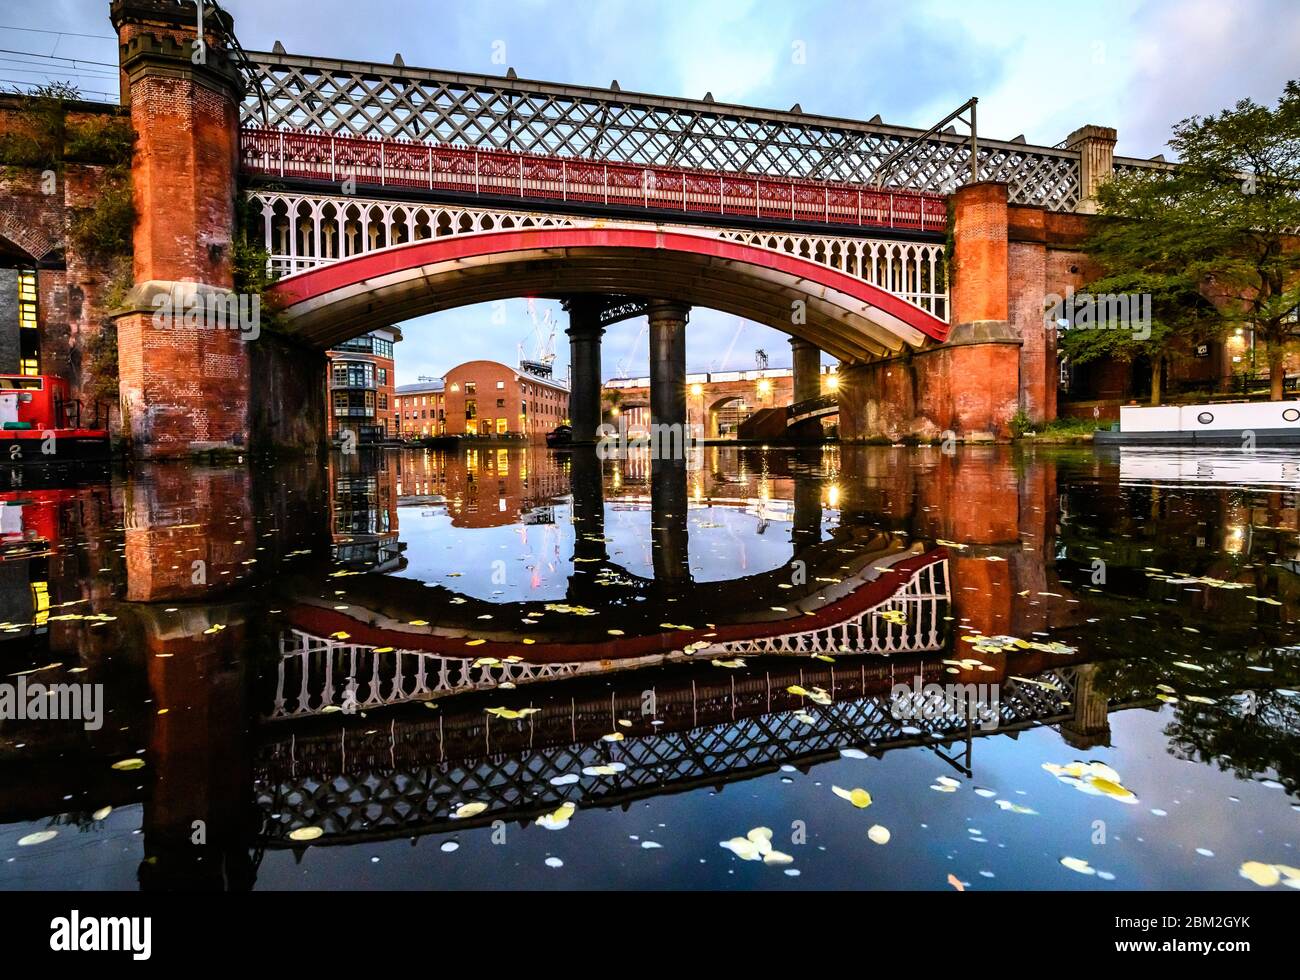 Le pont des marchands traversant le canal bridgewater dans le castlefield, Manchester, Royaume-Uni Banque D'Images